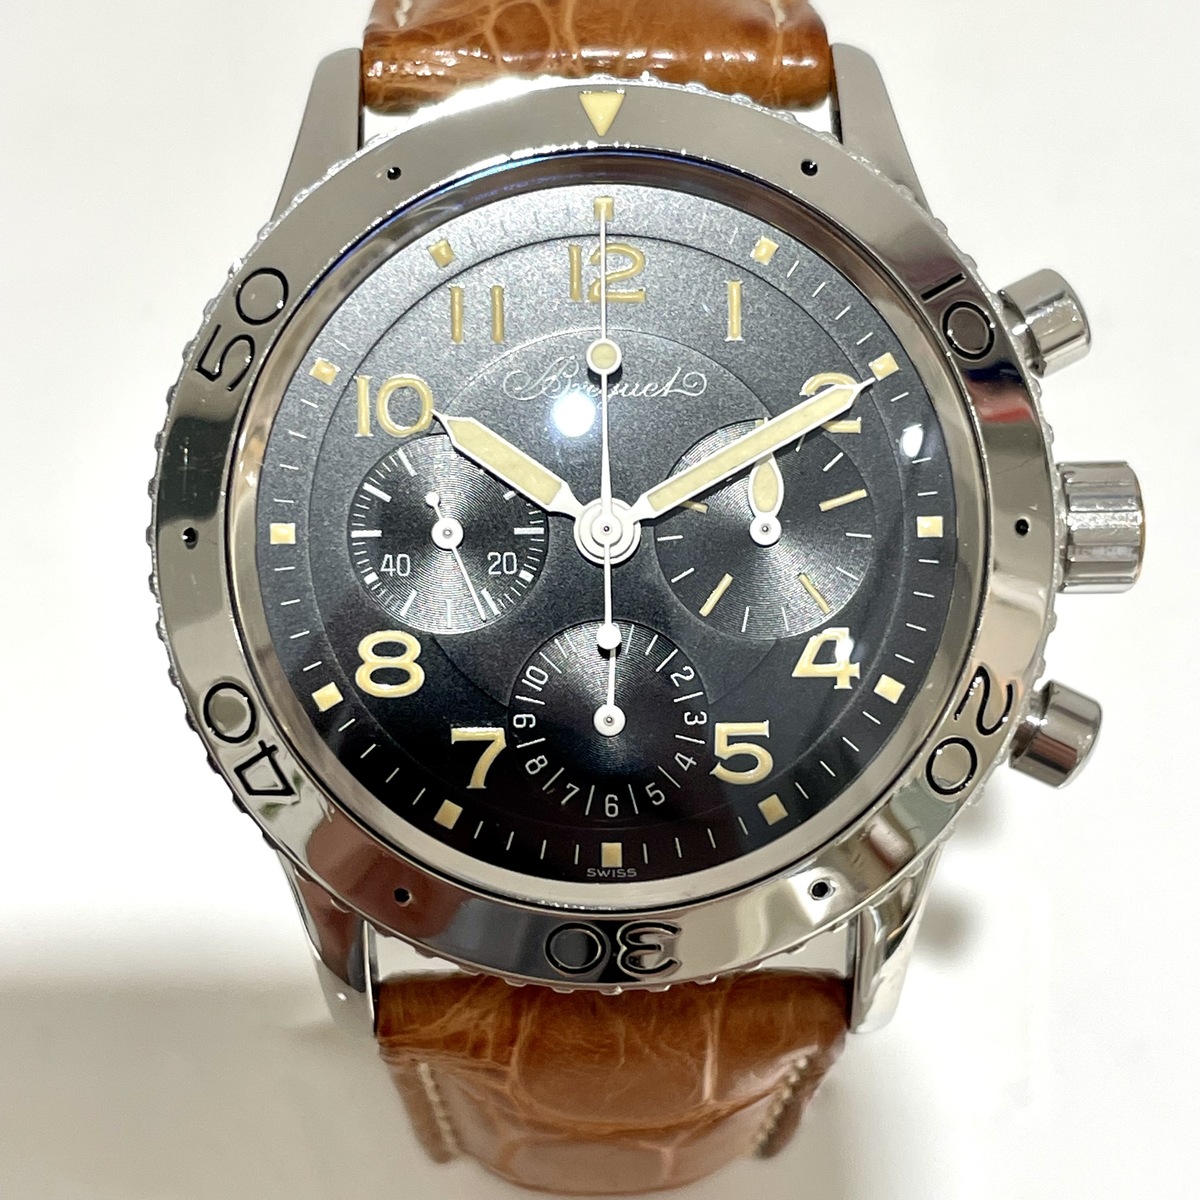 ブレゲのSS アエロナバル 3800.26706 自動巻き時計の買取実績です。